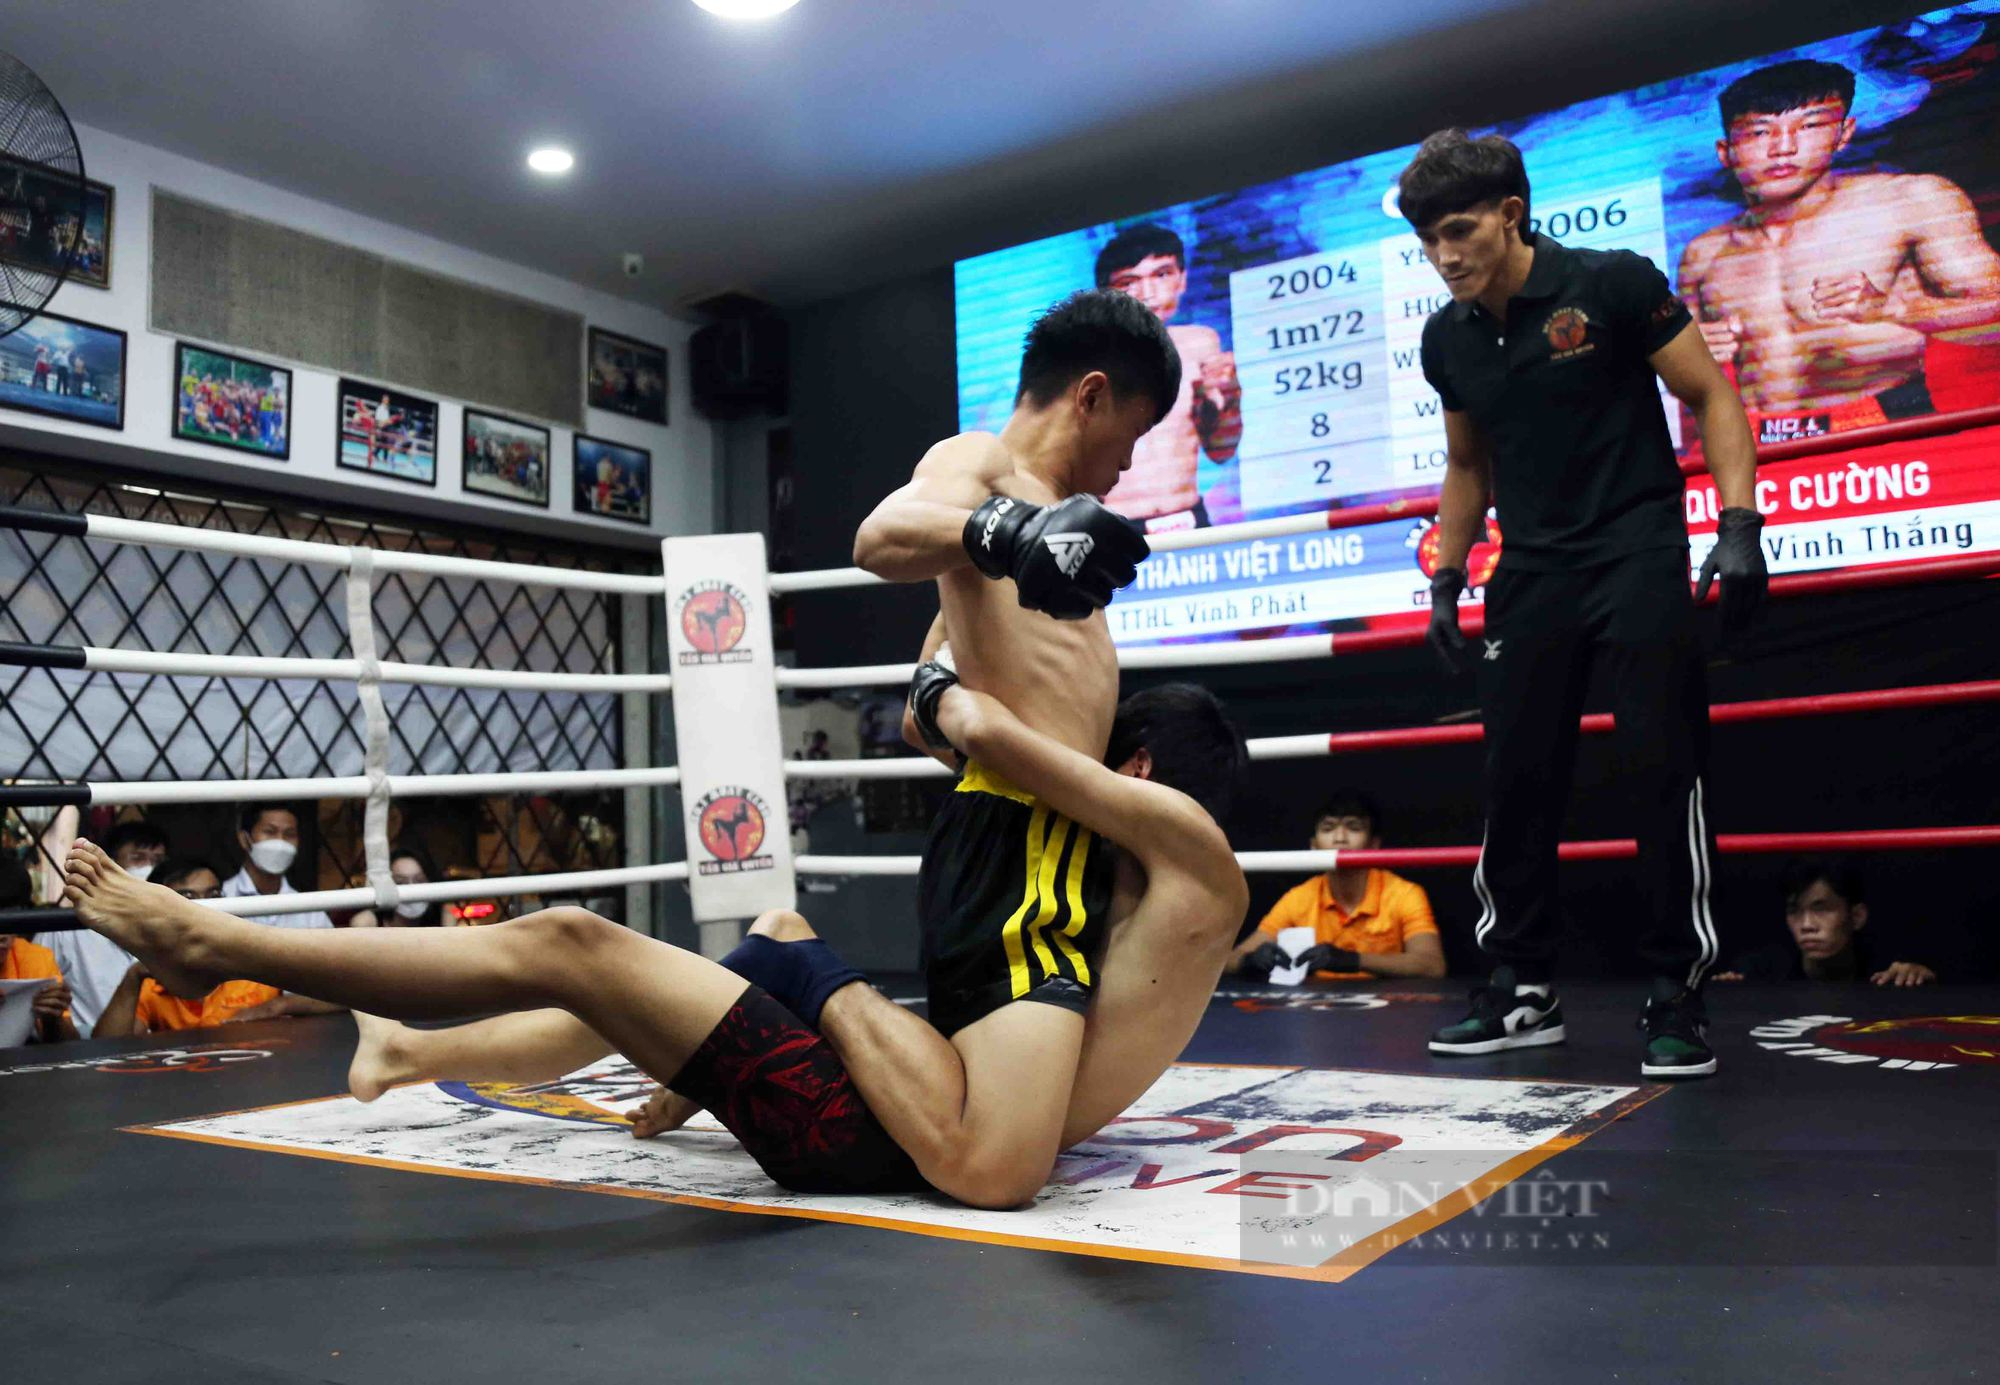 Vừa thắng giải MMA, Nguyễn Trần Duy Nhất thành “bầu show” giải võ - Ảnh 11.